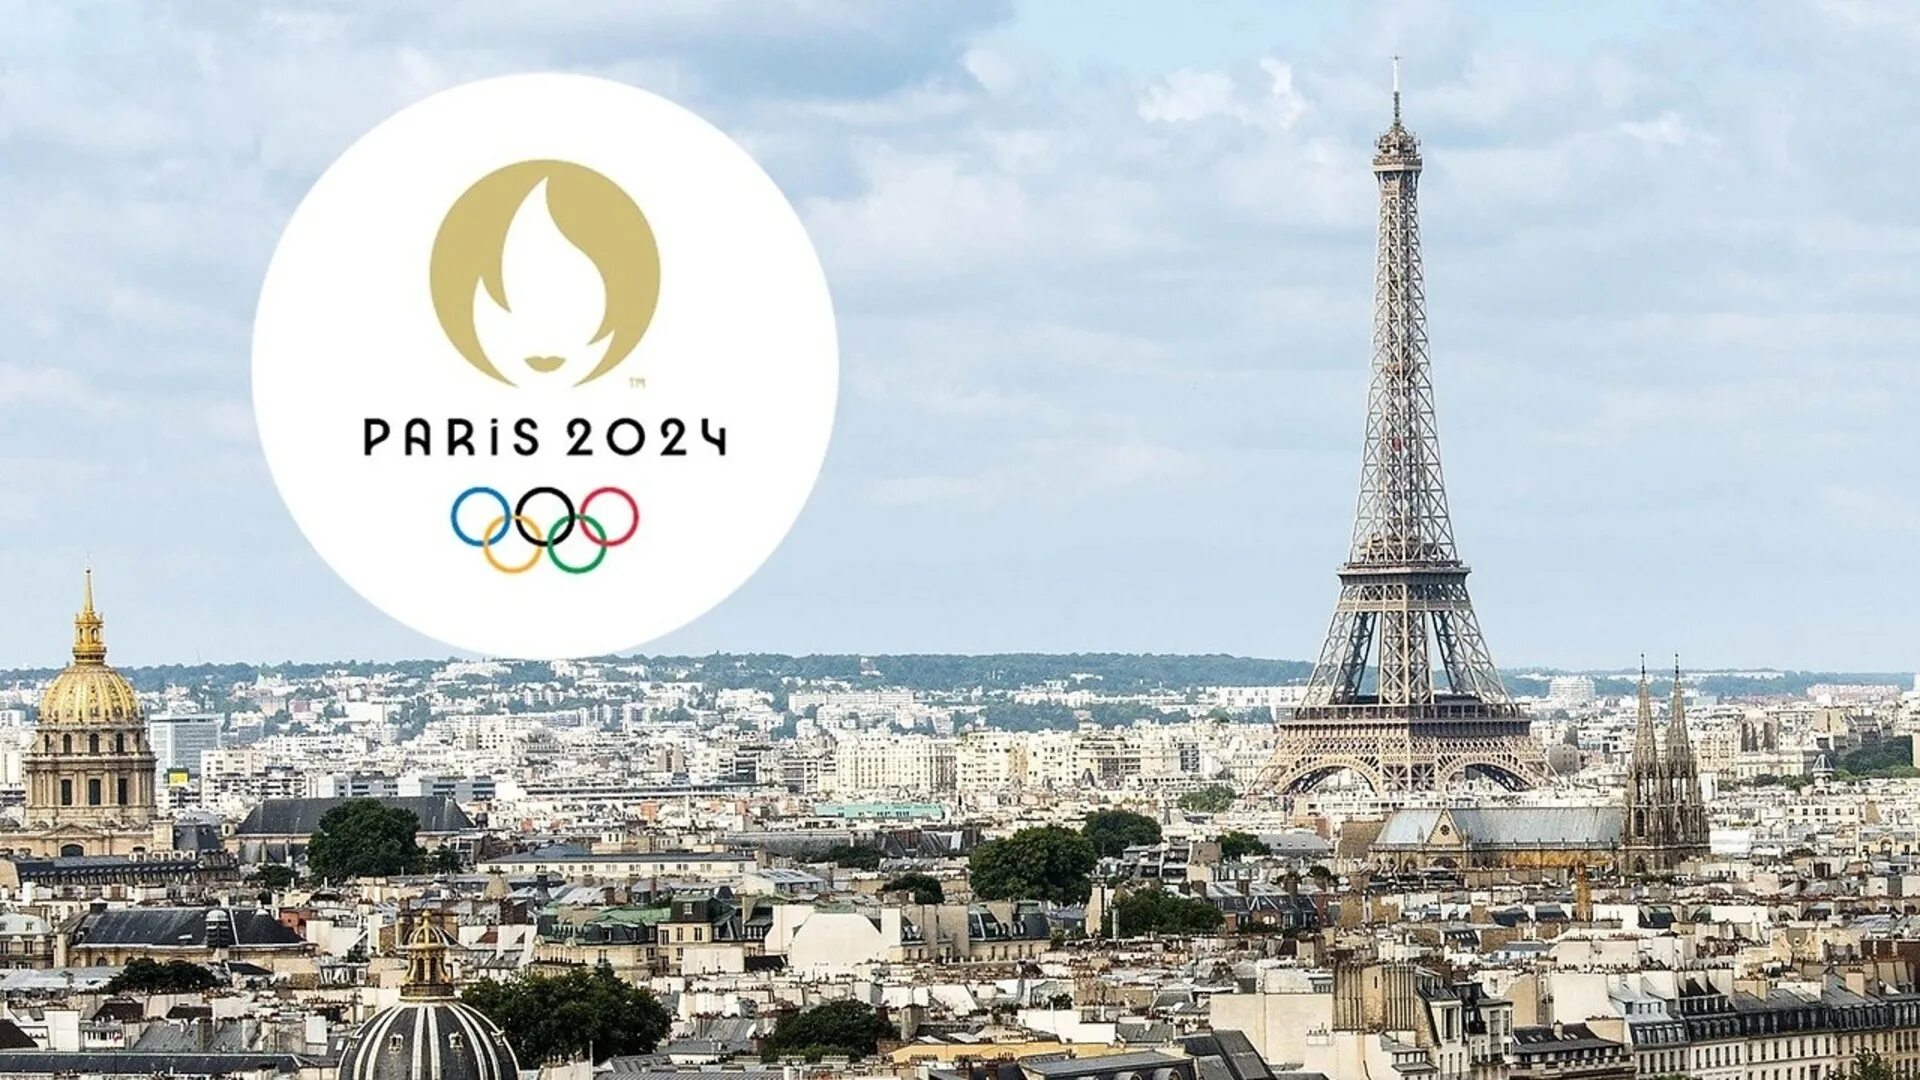 09.01 2024 г. Олимпийские игры 2024 года в Париже. Олимпийских игр–2024 в Париже лого.